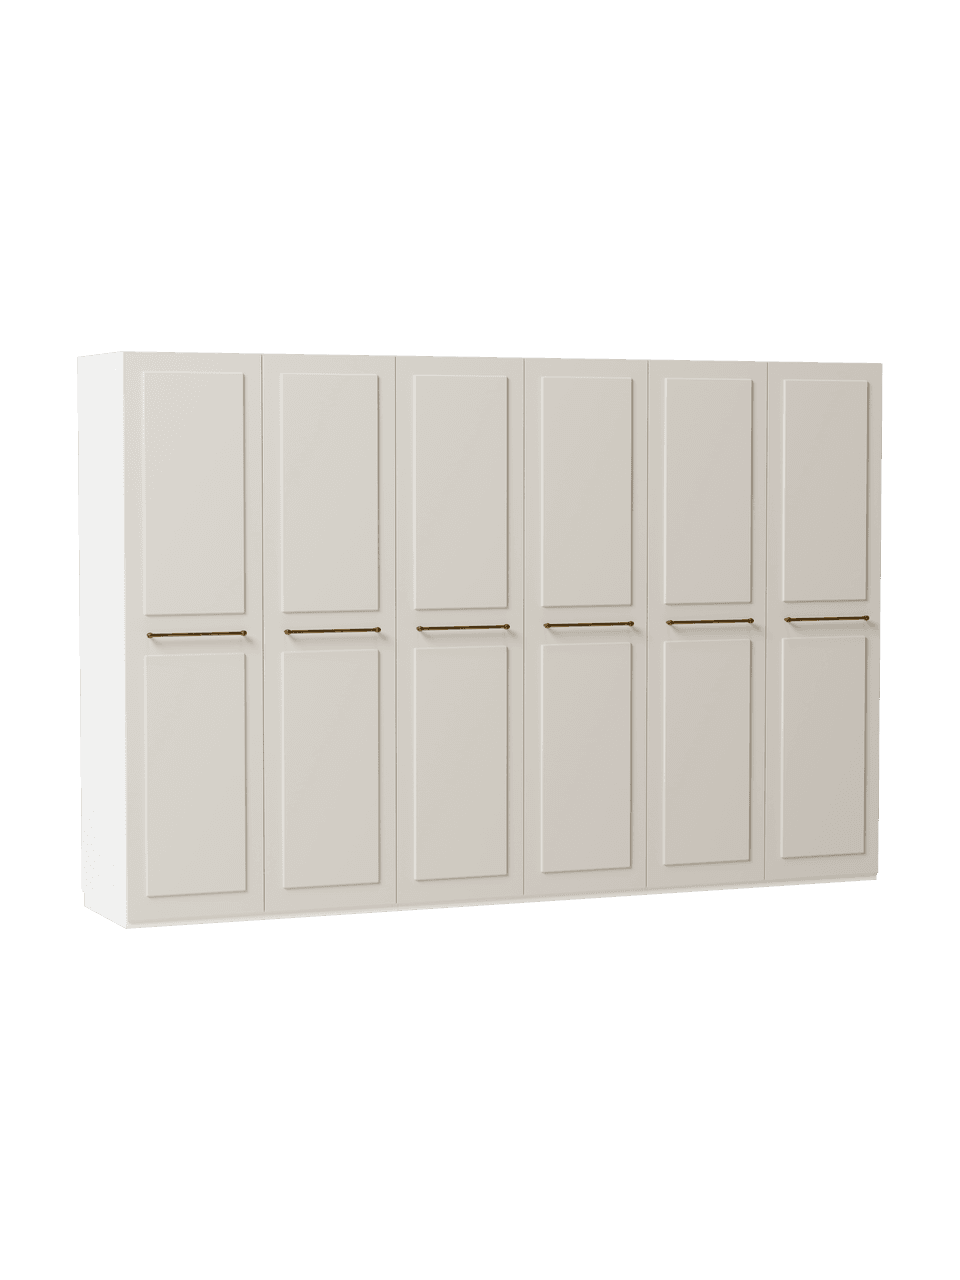 Szafa modułowa Charlotte, 6-drzwiowa, różne warianty, Korpus: płyta wiórowa pokryta mel, Beżowy, W 200 cm, Basic